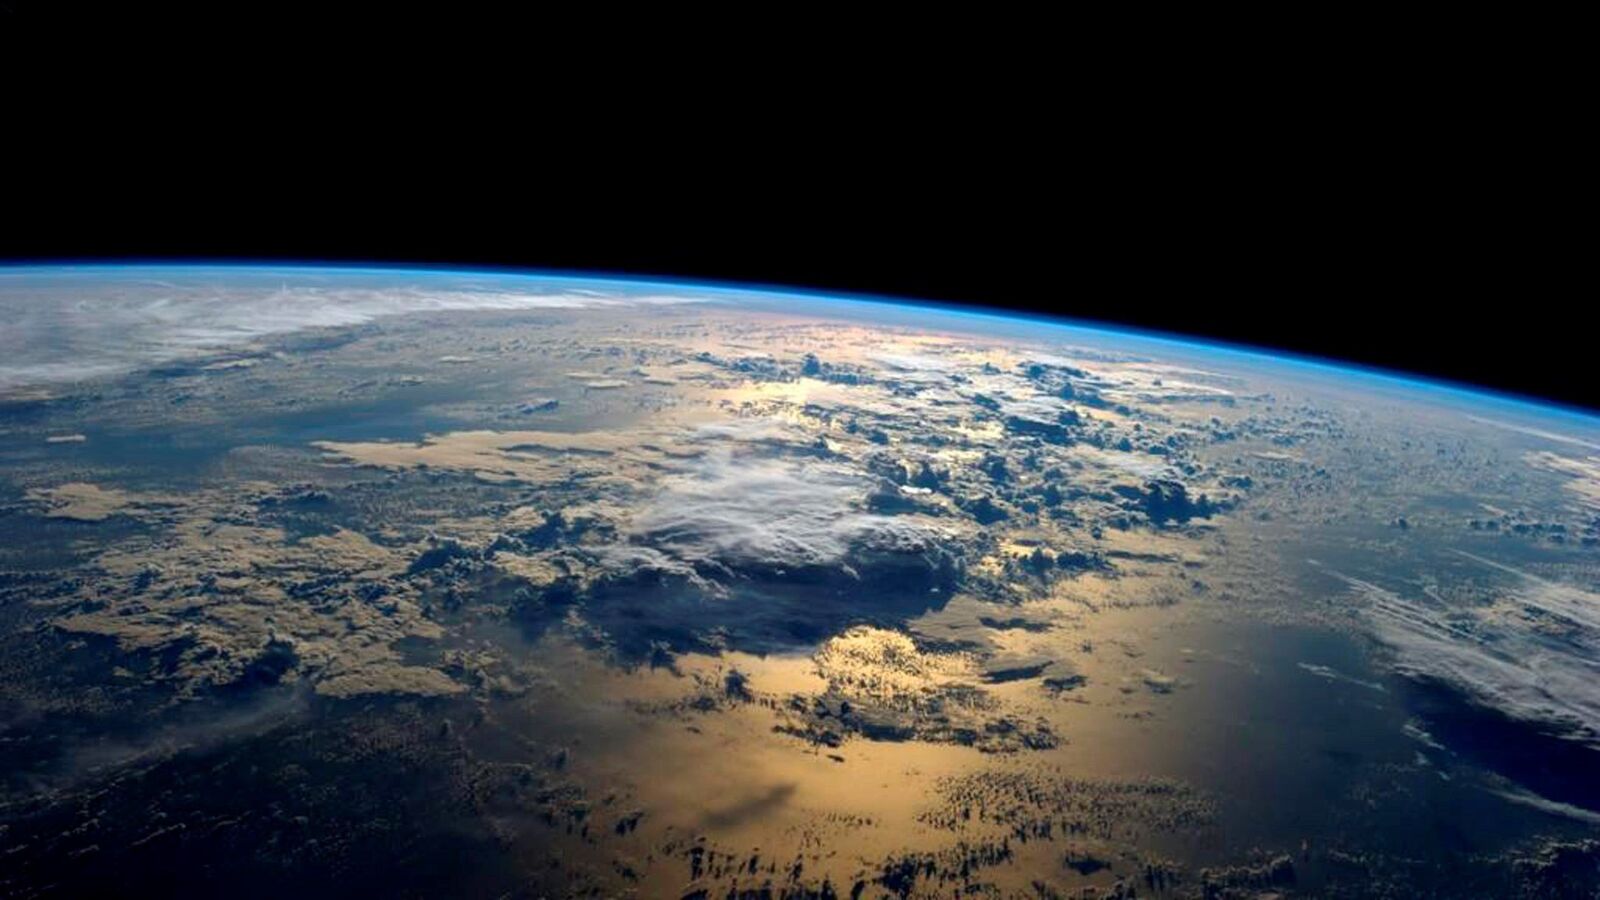 اروع صور لكوكب الارض , خلفيات شكل الارض الحقيقى , 2021 Earth Wallpapers